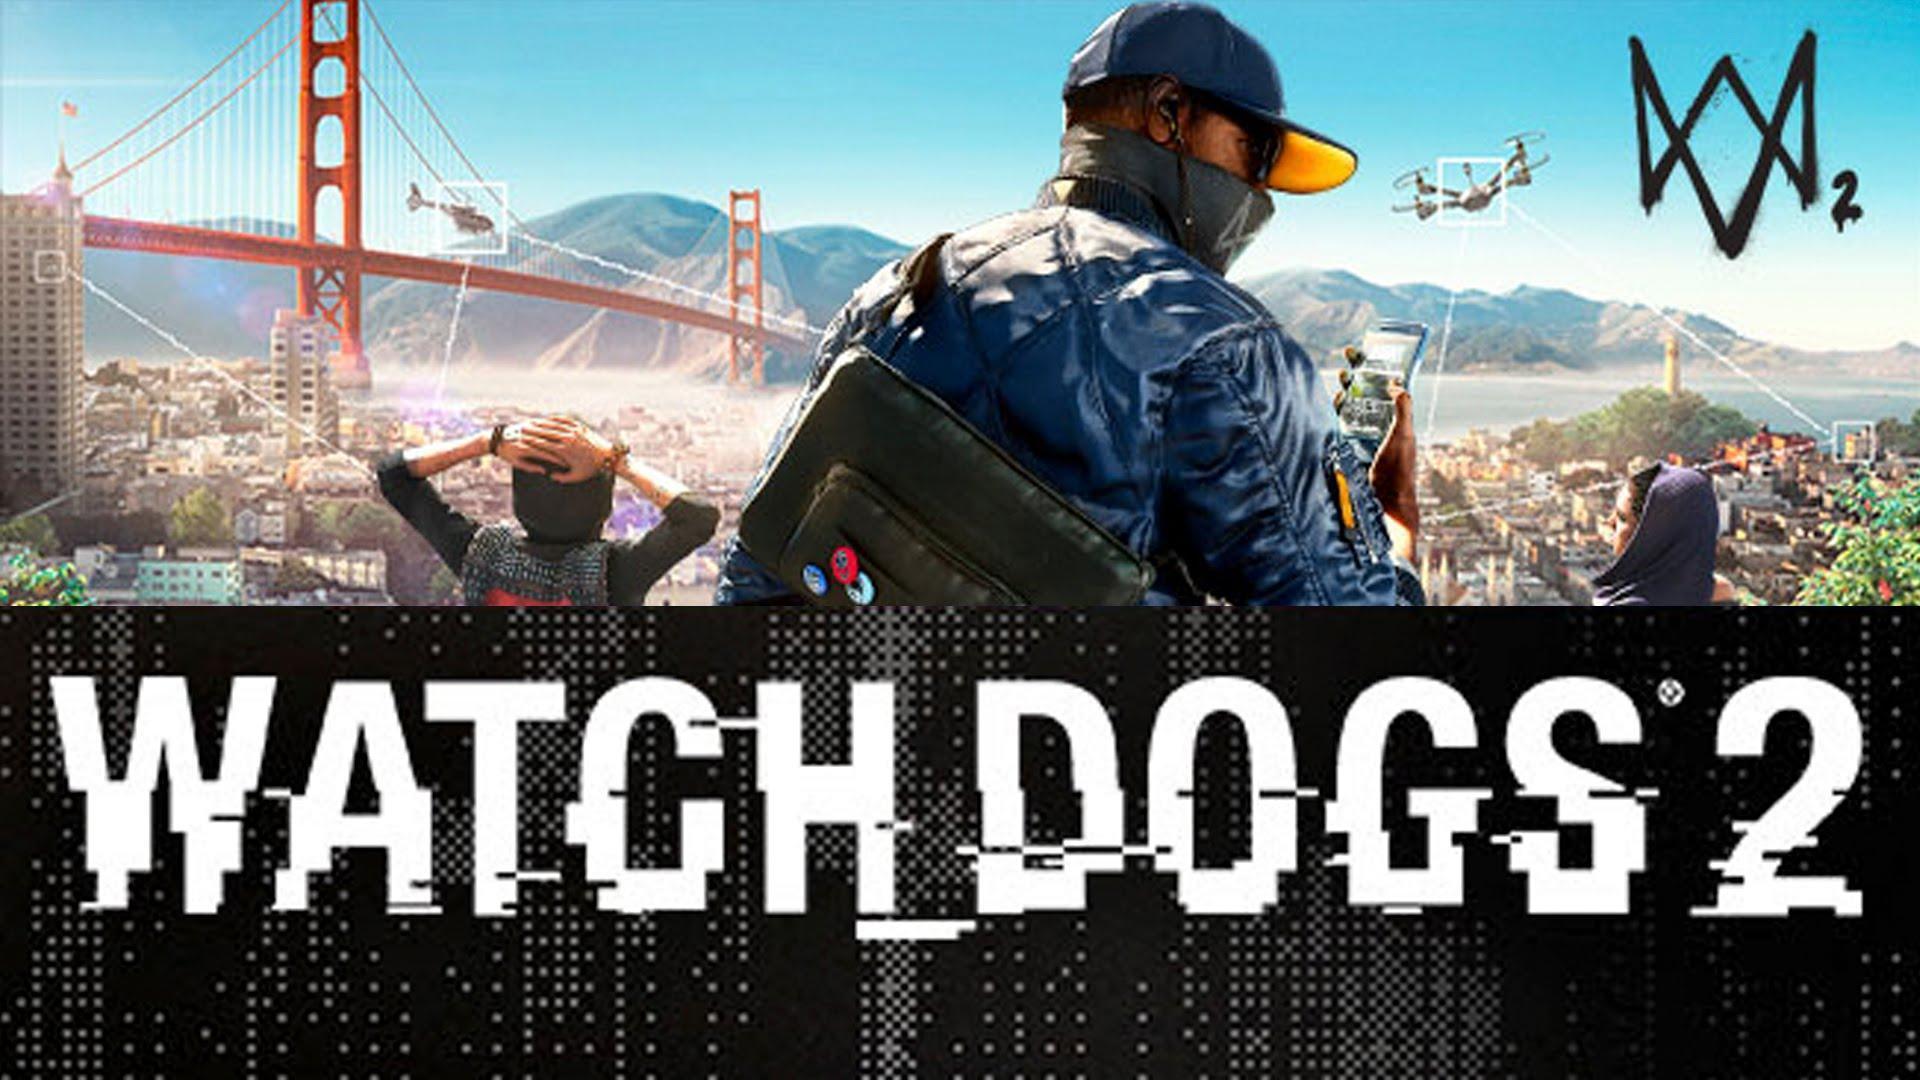 Watch Dogs 2 Wallpaper - Watch Dogs 2 Wallpaper 4k Pc , HD Wallpaper & Backgrounds